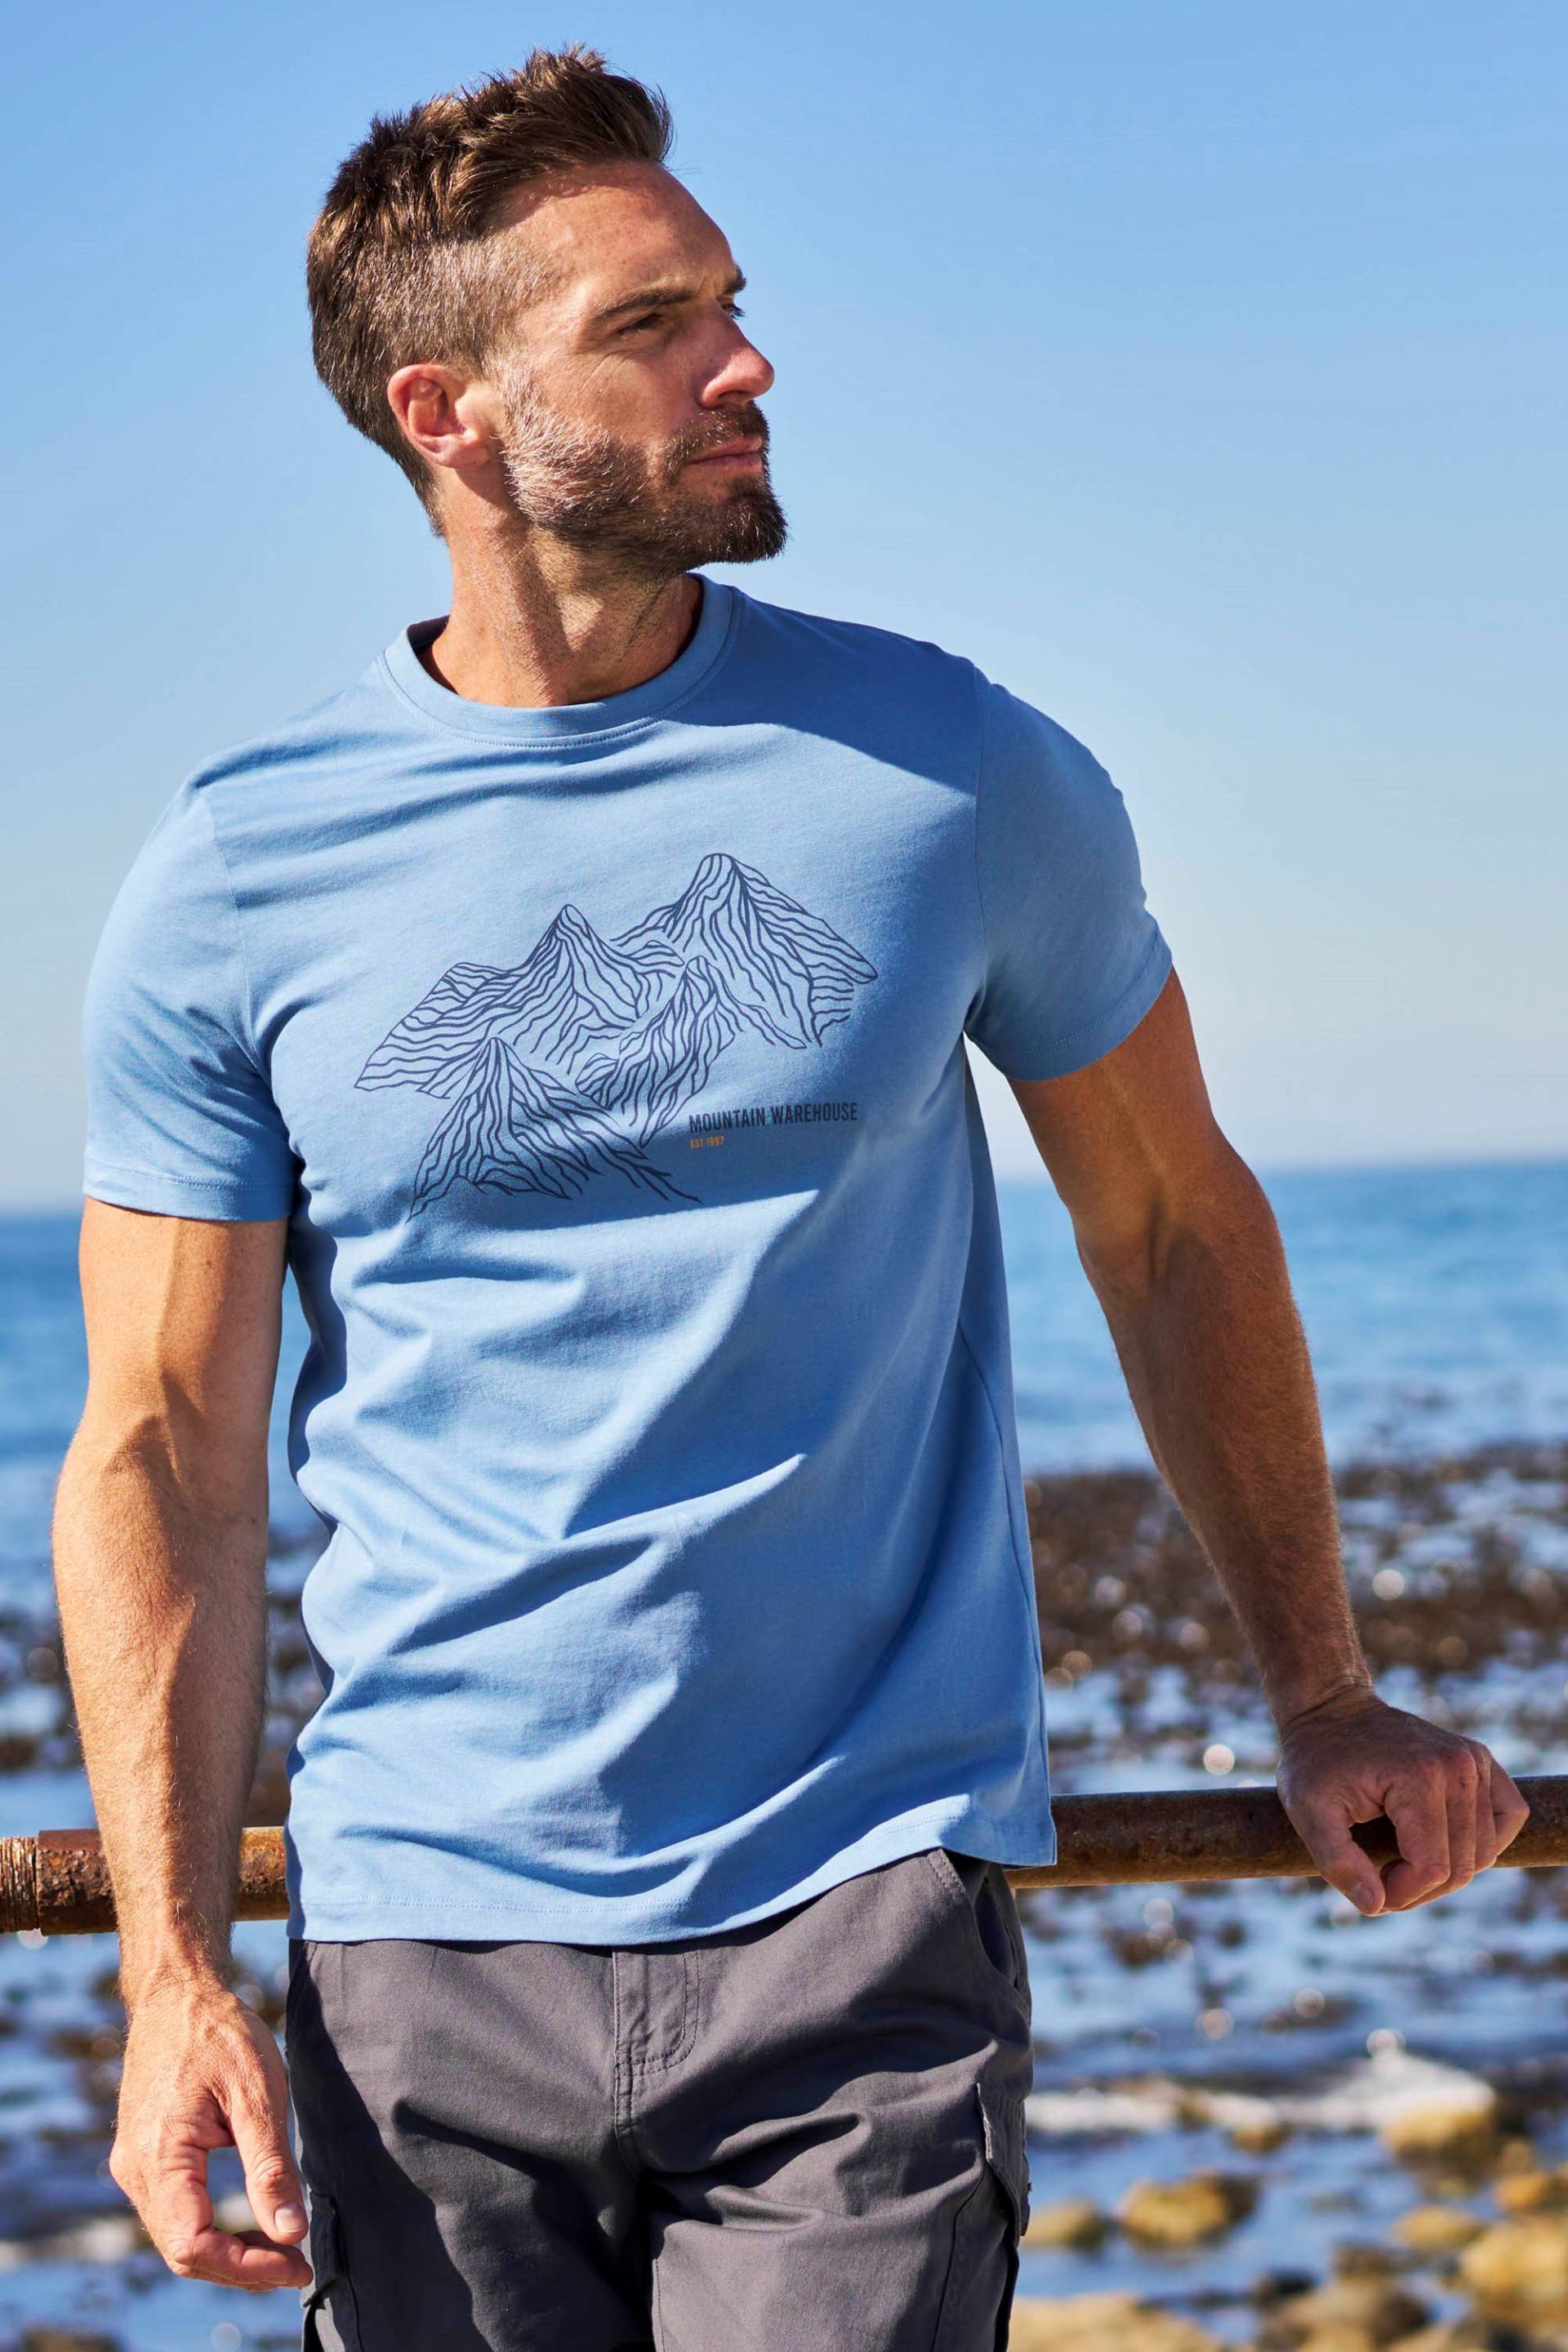 Tonal Mountain Bio-Baumwoll Herren T-Shirt - Blau von Mountain Warehouse